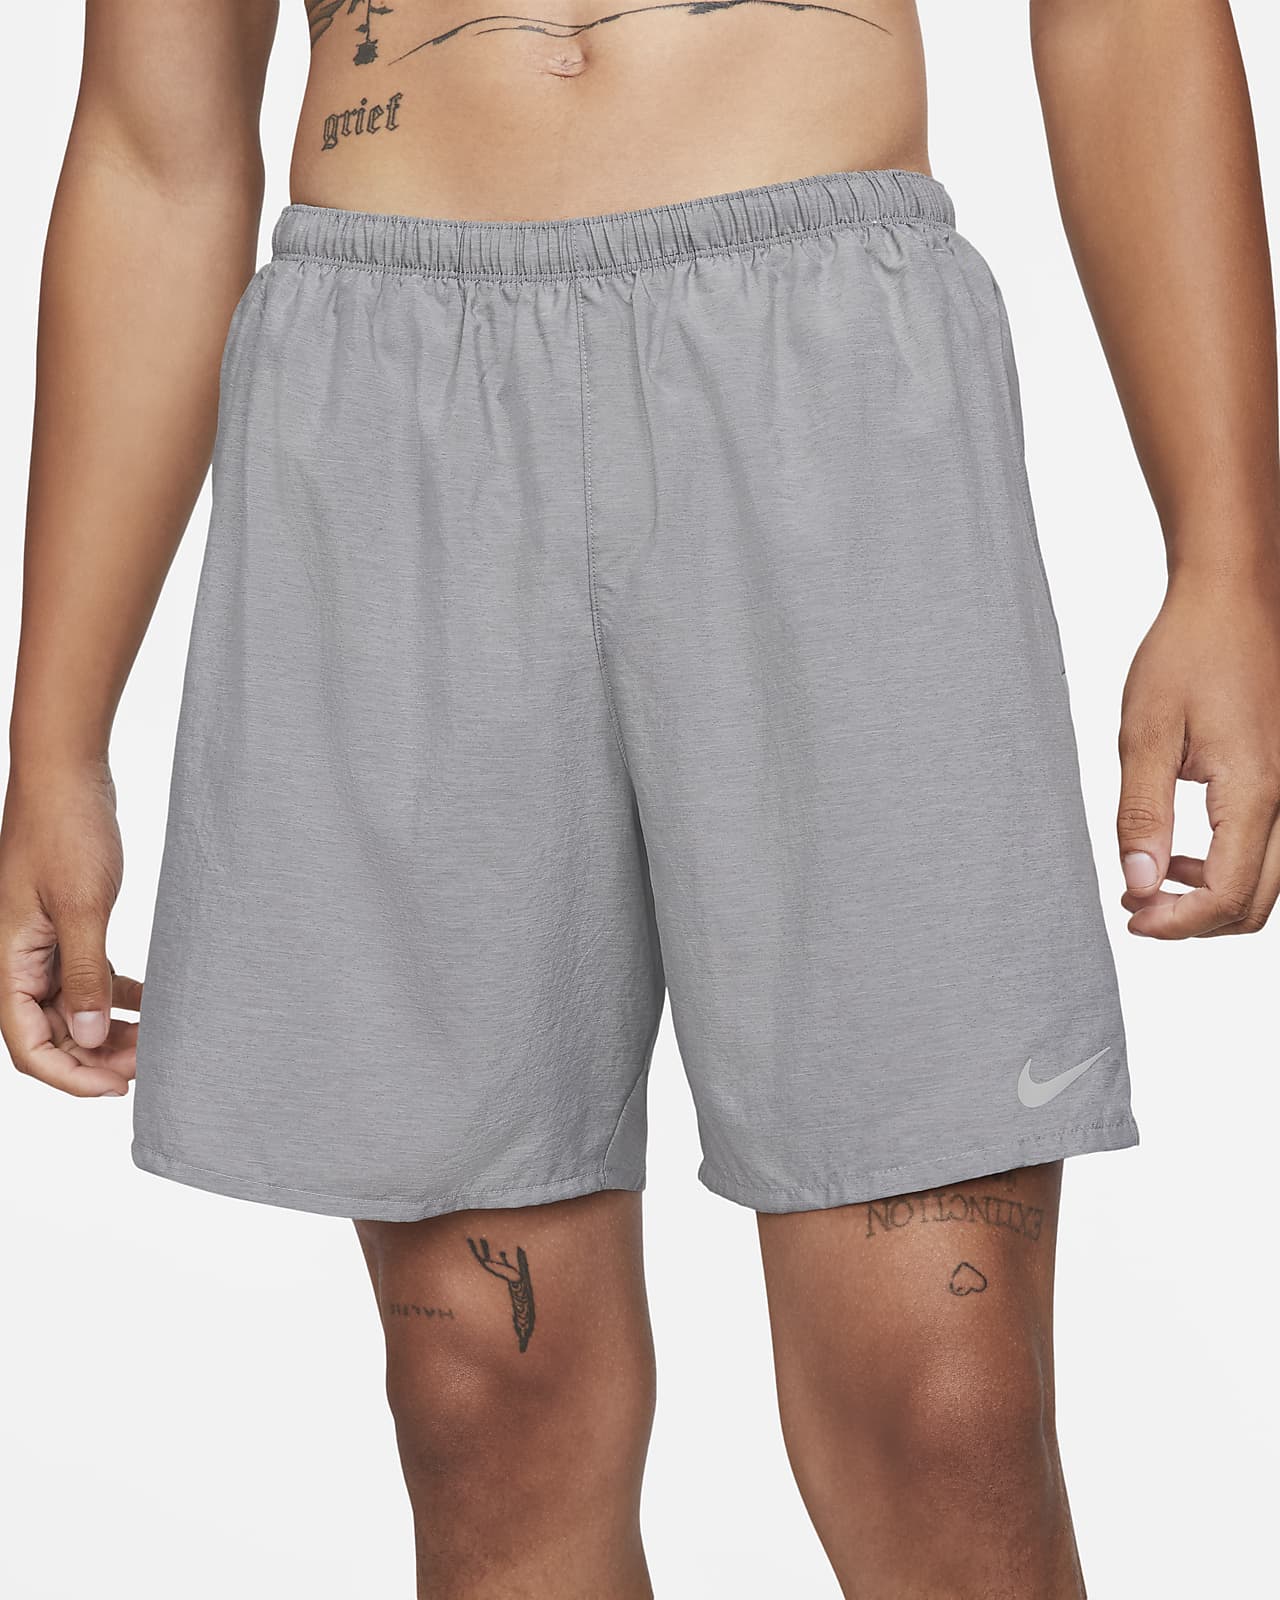 Nike Challenger Men's 7" Shorts.